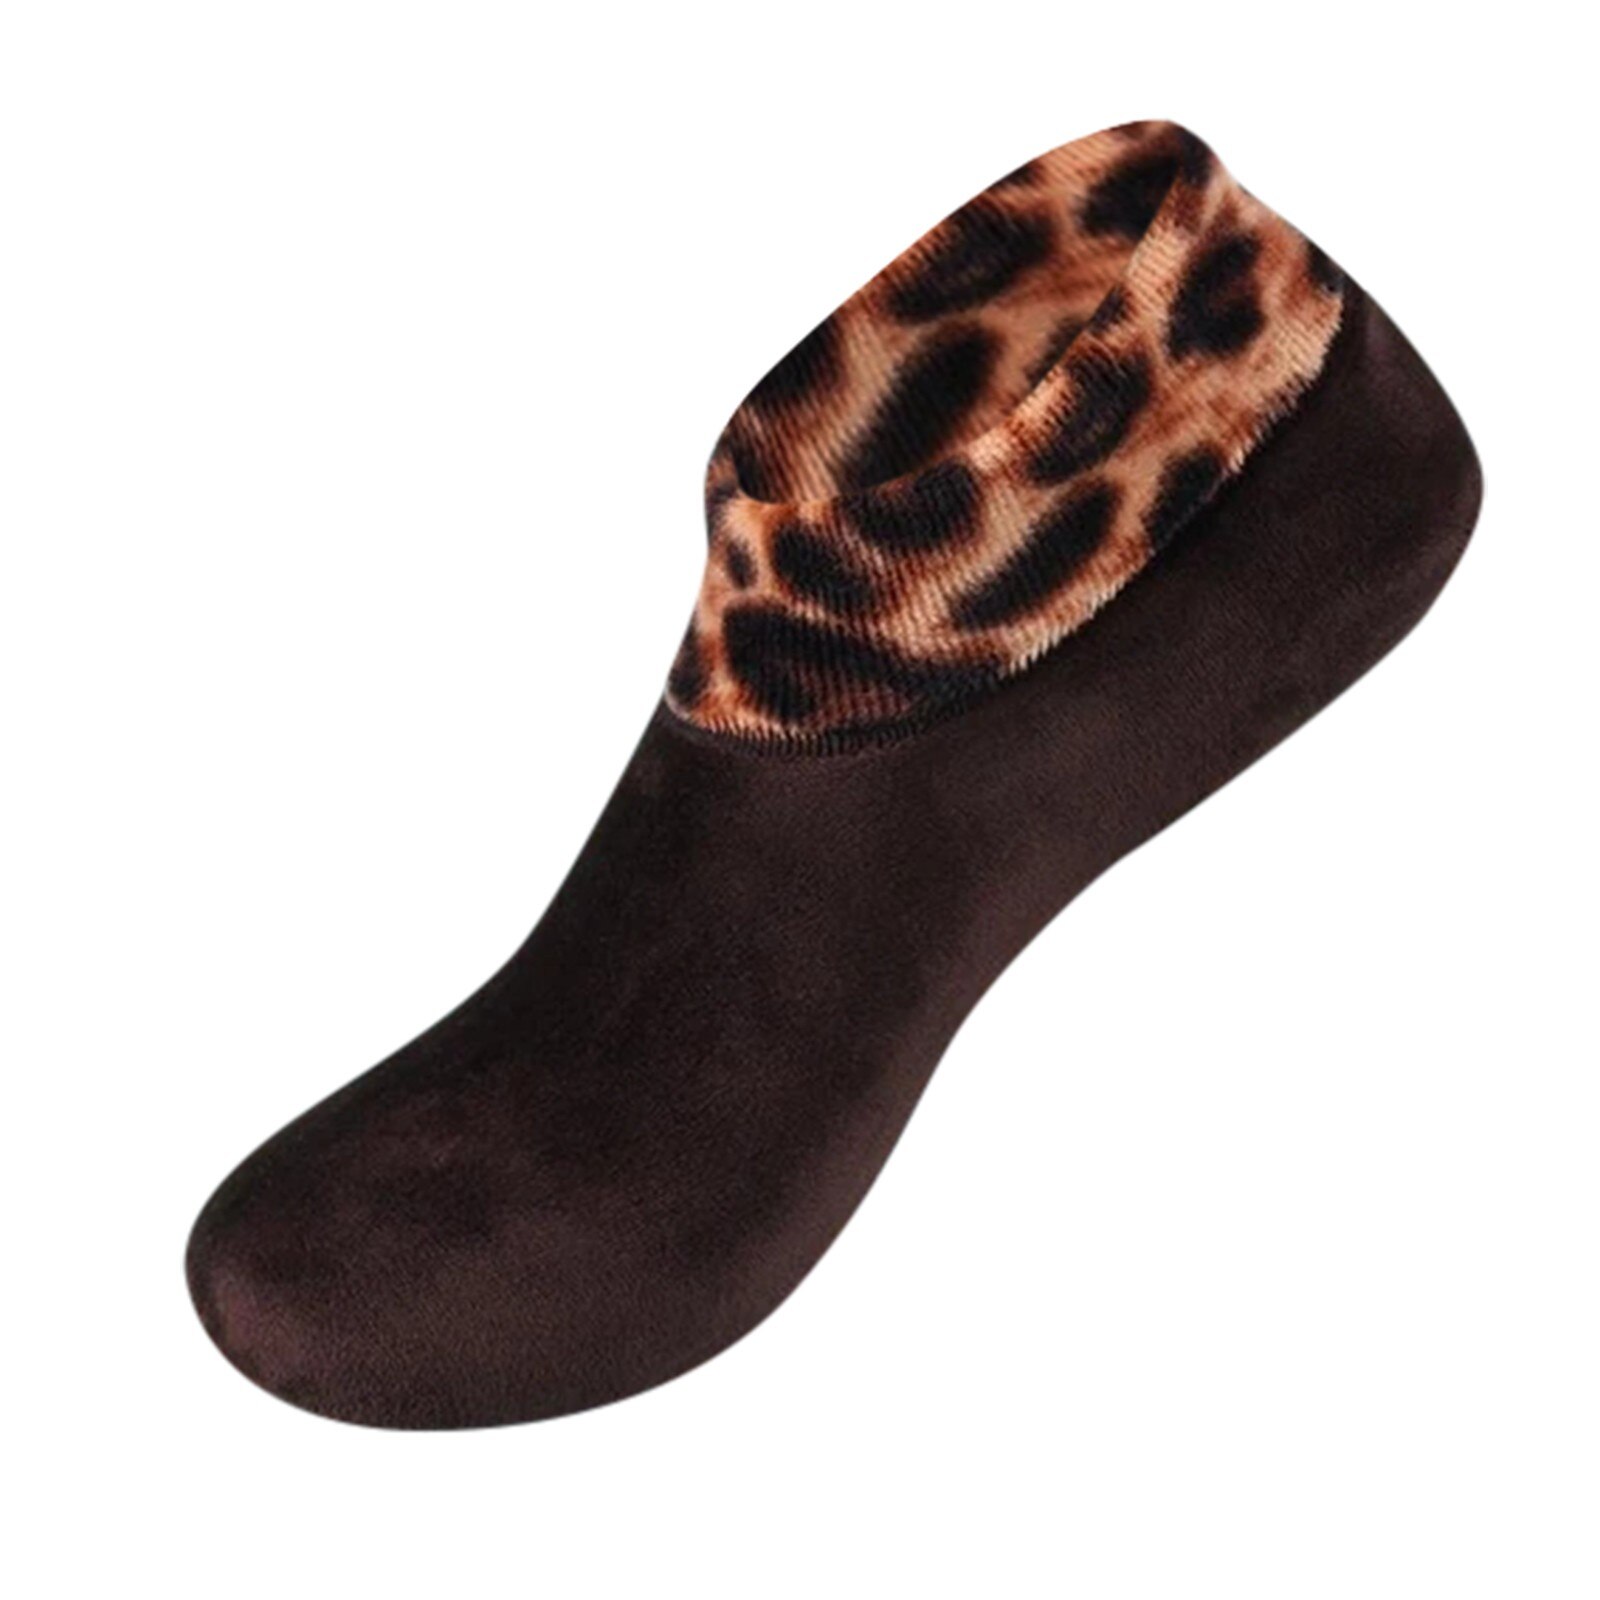 Donna uomo inverno caldo stampa leopardo addensare calzini termici lana Cashmere antiscivolo calzino per la casa stivali morbidi calzini per dormire al pavimento: Brown